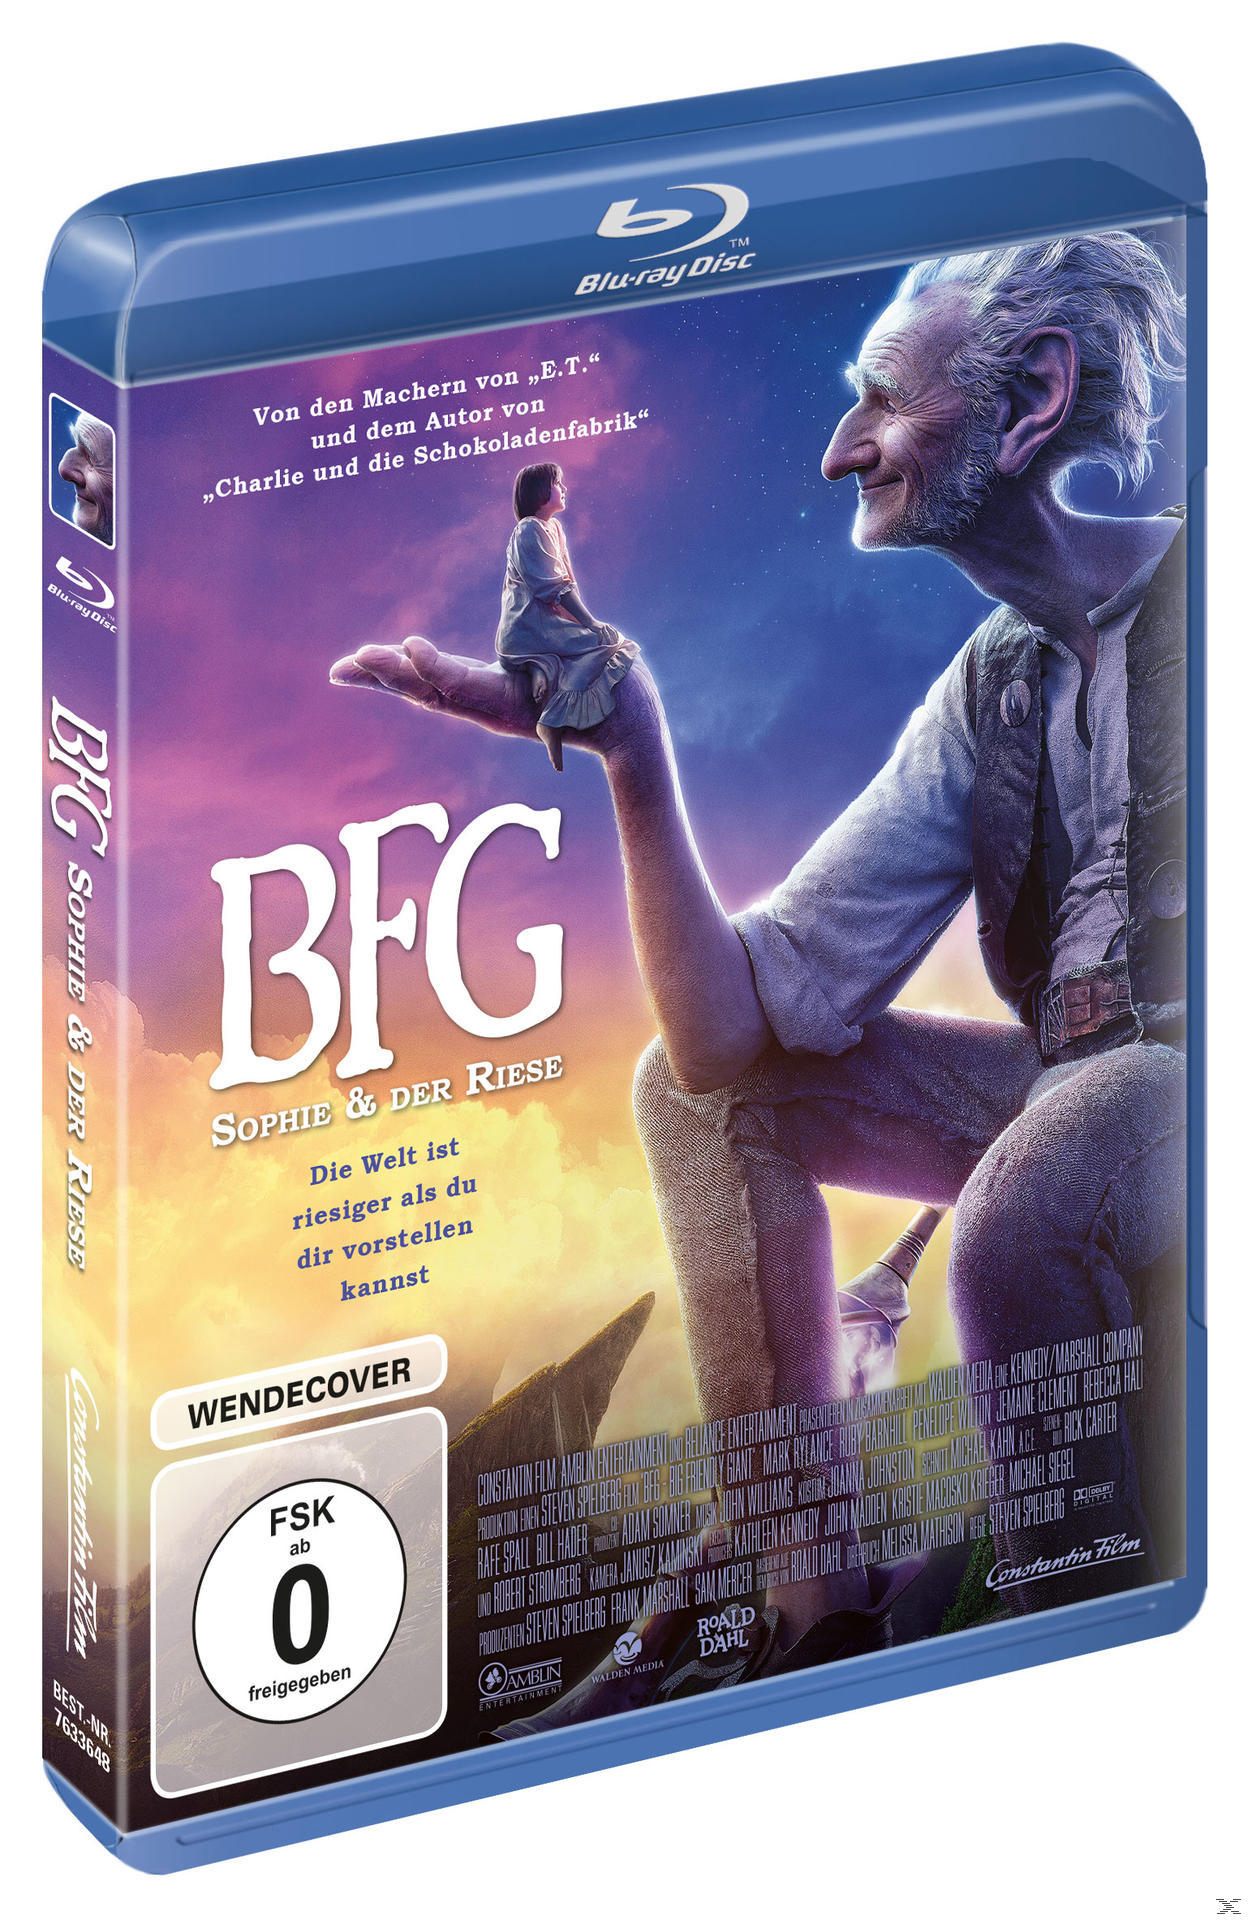 BFG Sophie Riese - Blu-ray der und